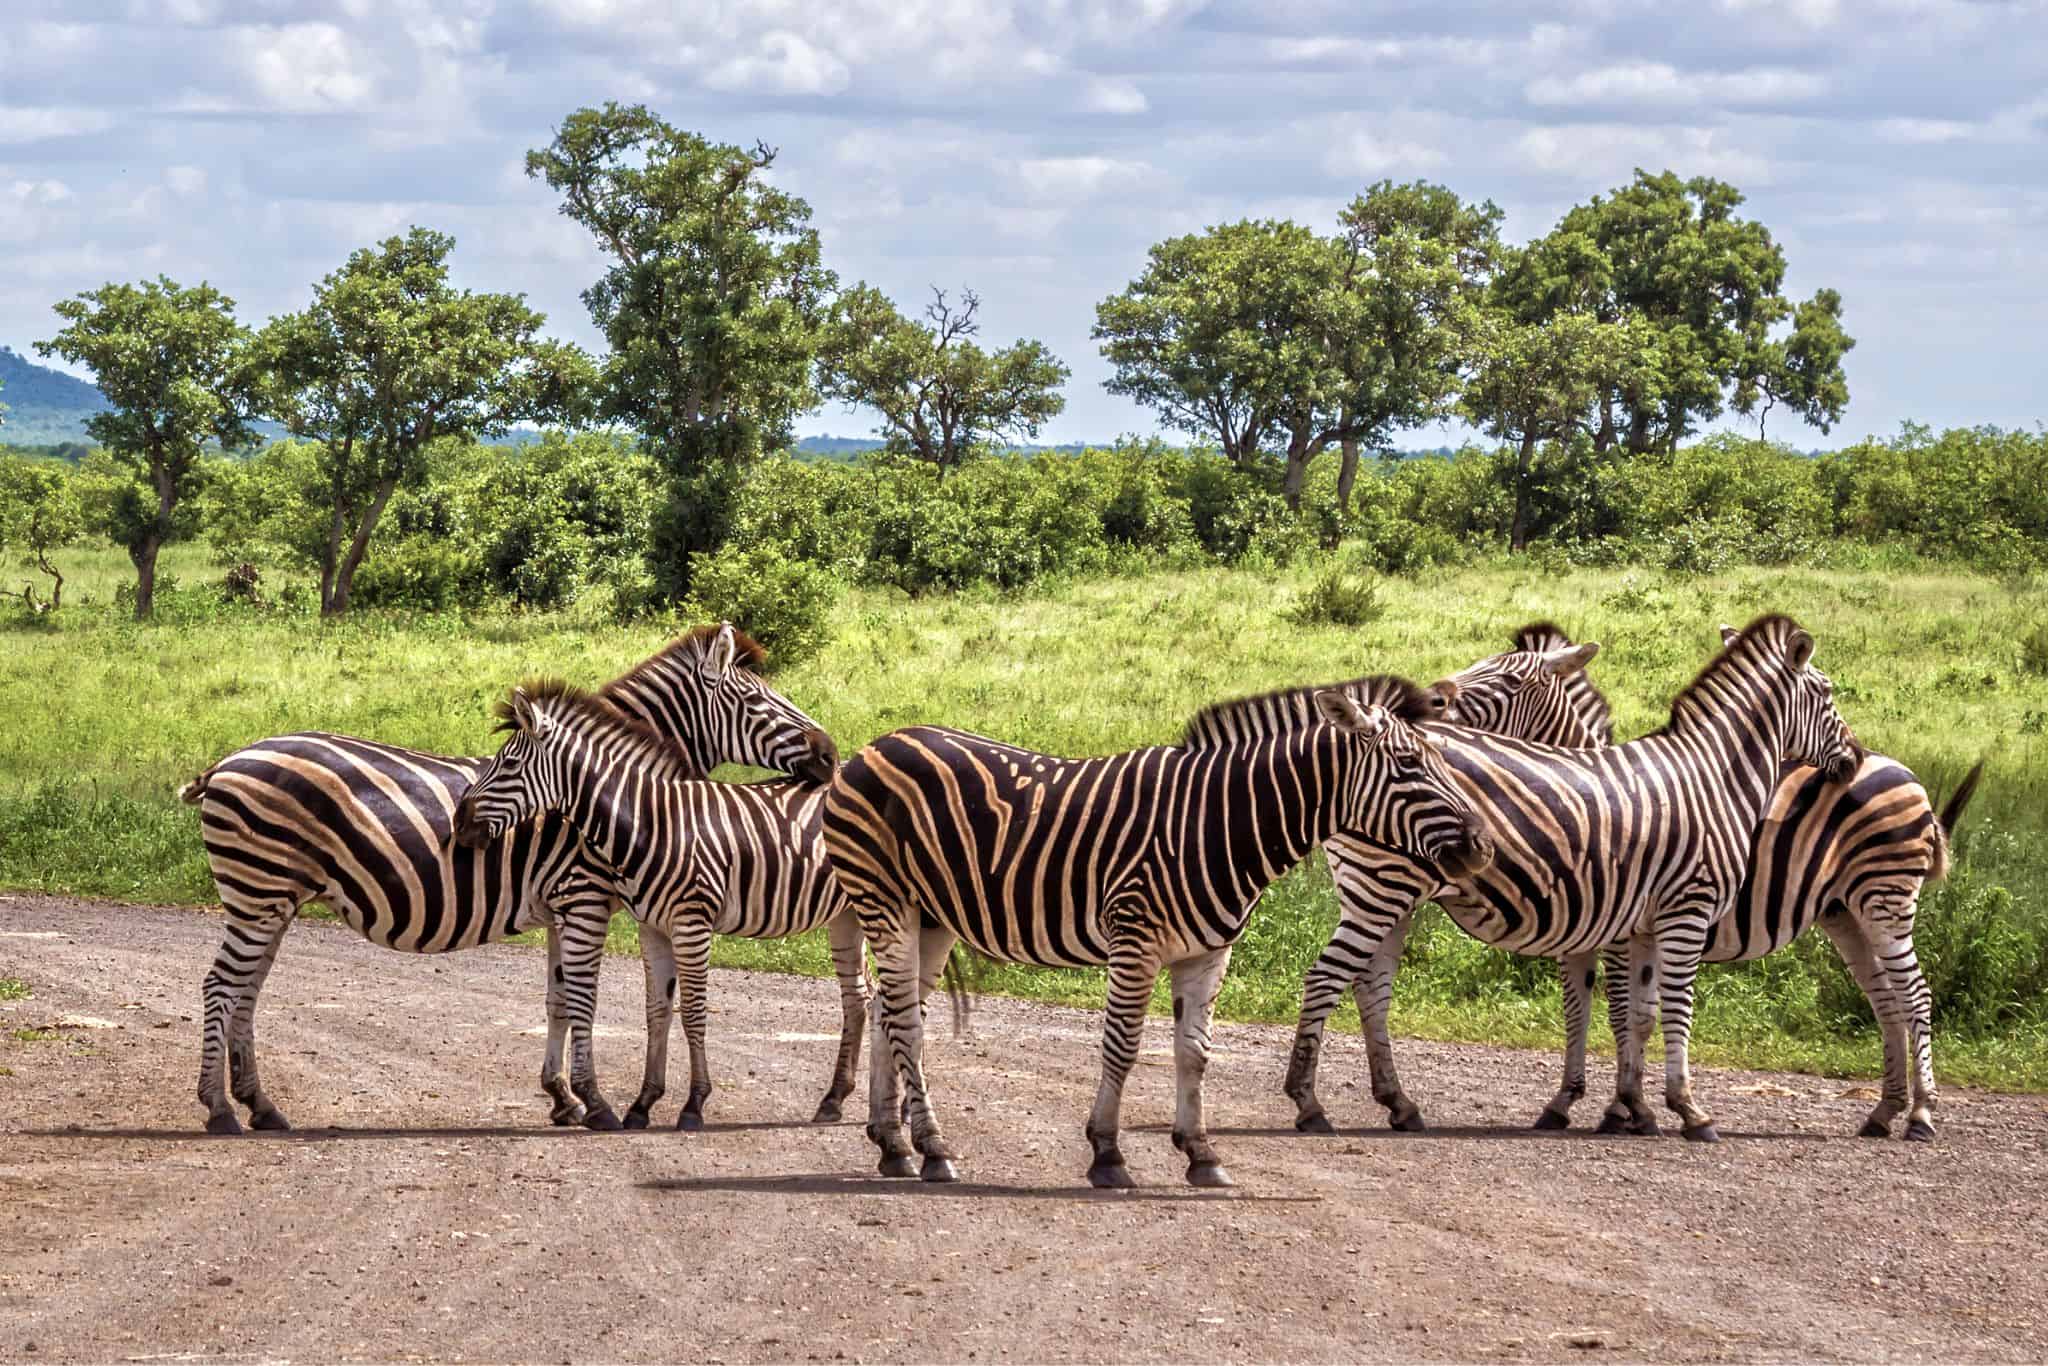 Group of Zebras in Kruger National Park South Africa